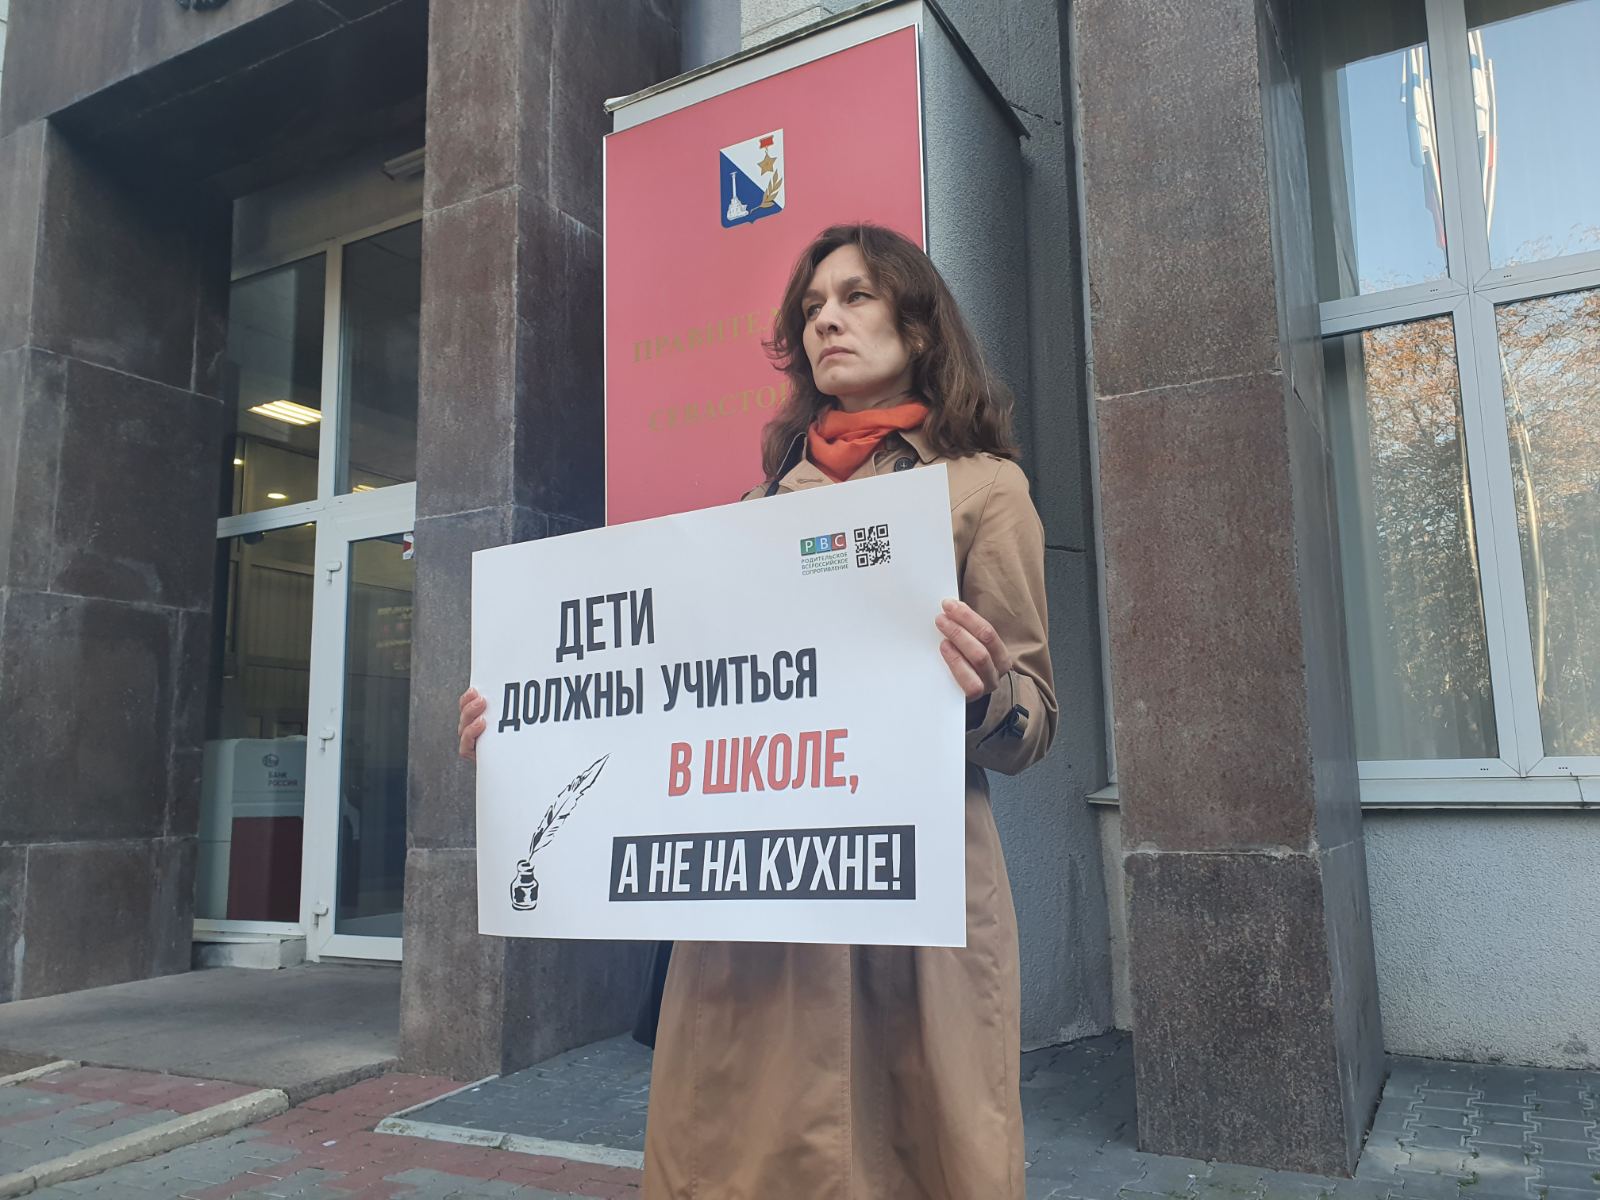 Одиночный пикет против «дистанционки» возле здания правительства Севастополя